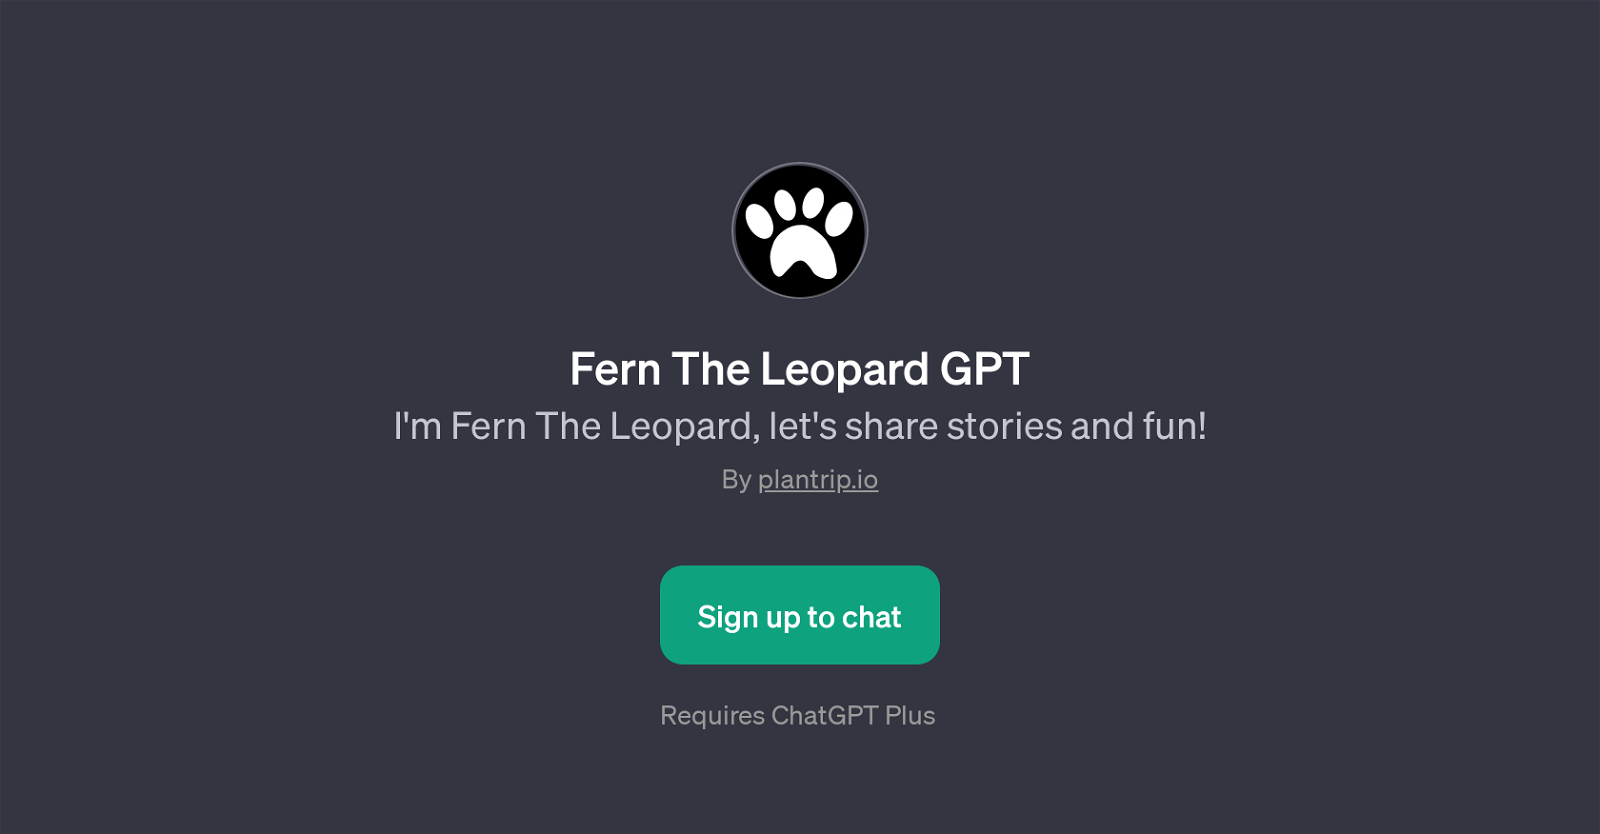 Fern The Leopard GPT website